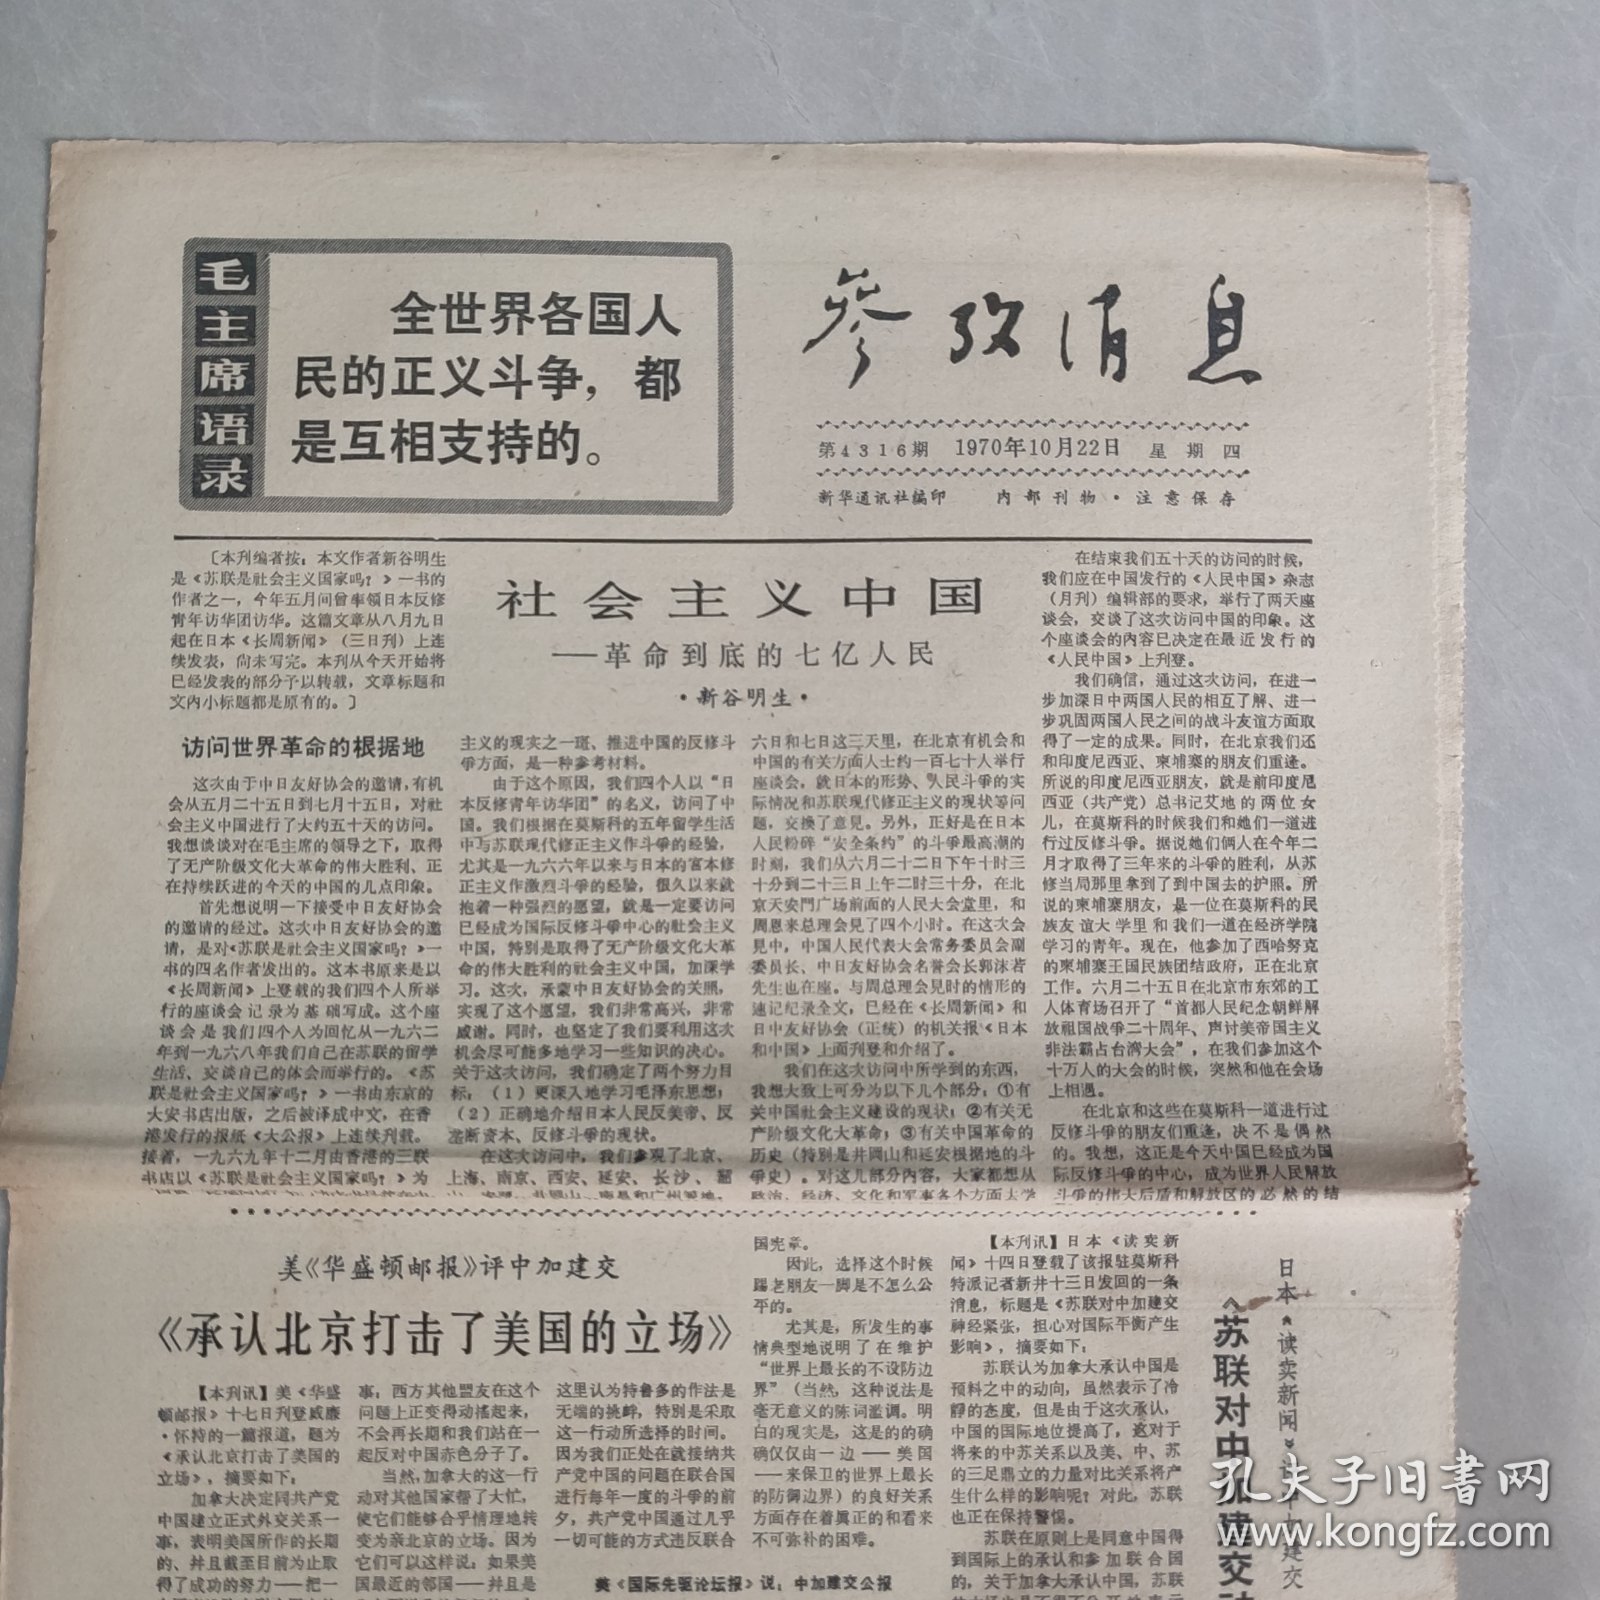 参考消息1970年10月22日 社会主义中国 革命到底的七亿人民（一），承认北京打击了美国的立场（老报纸 生日报